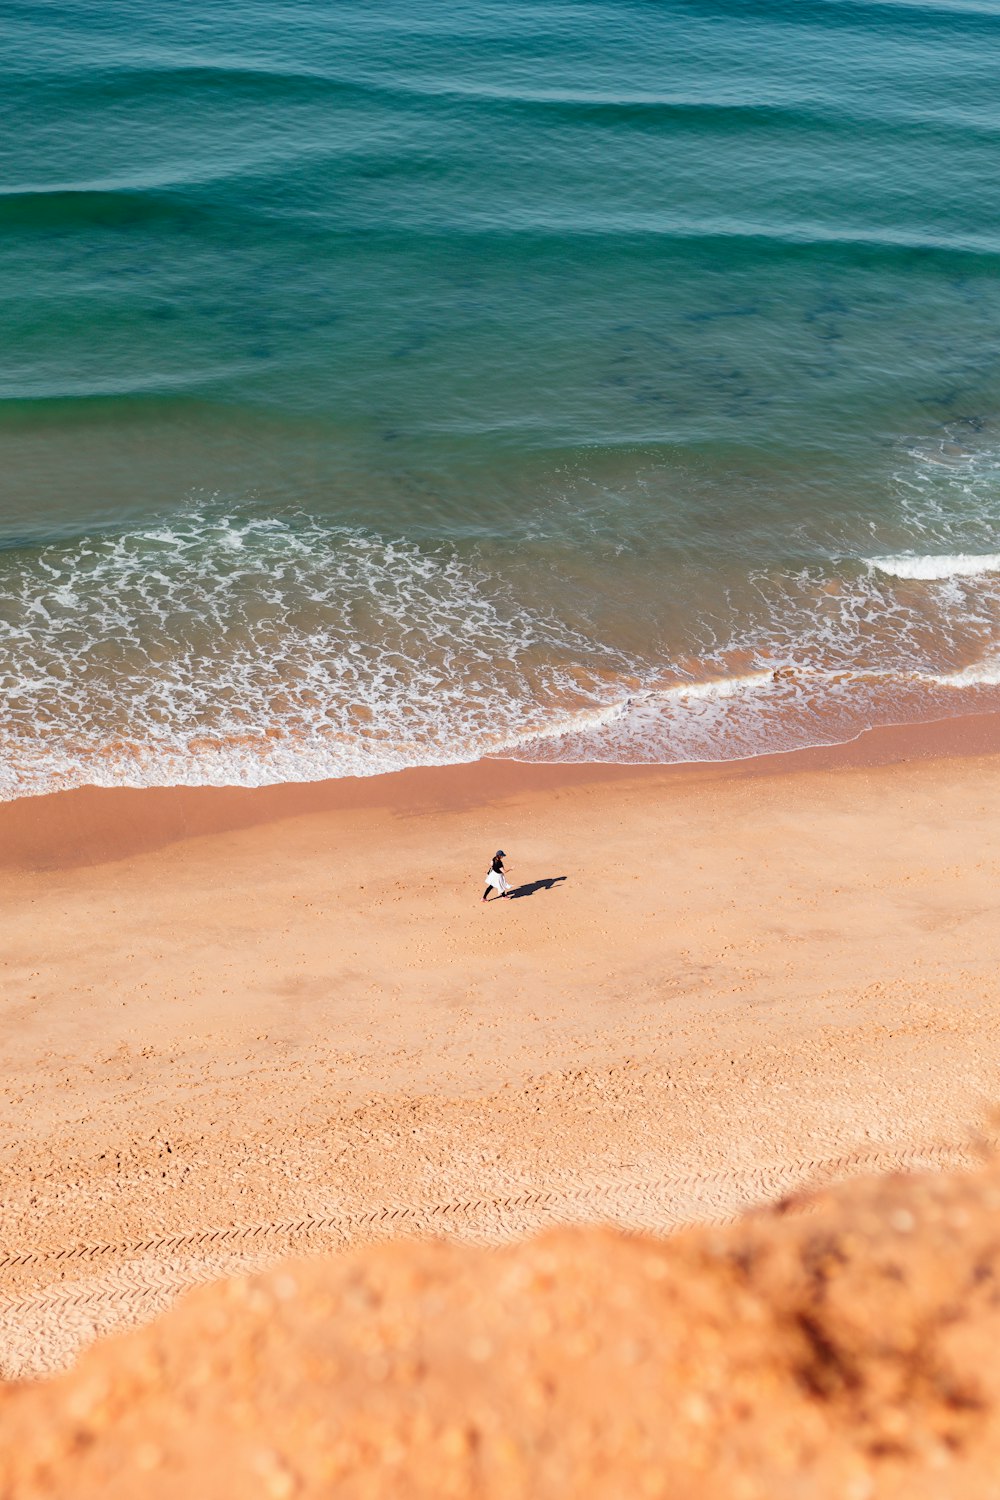 a bird is standing on a beach near the ocean